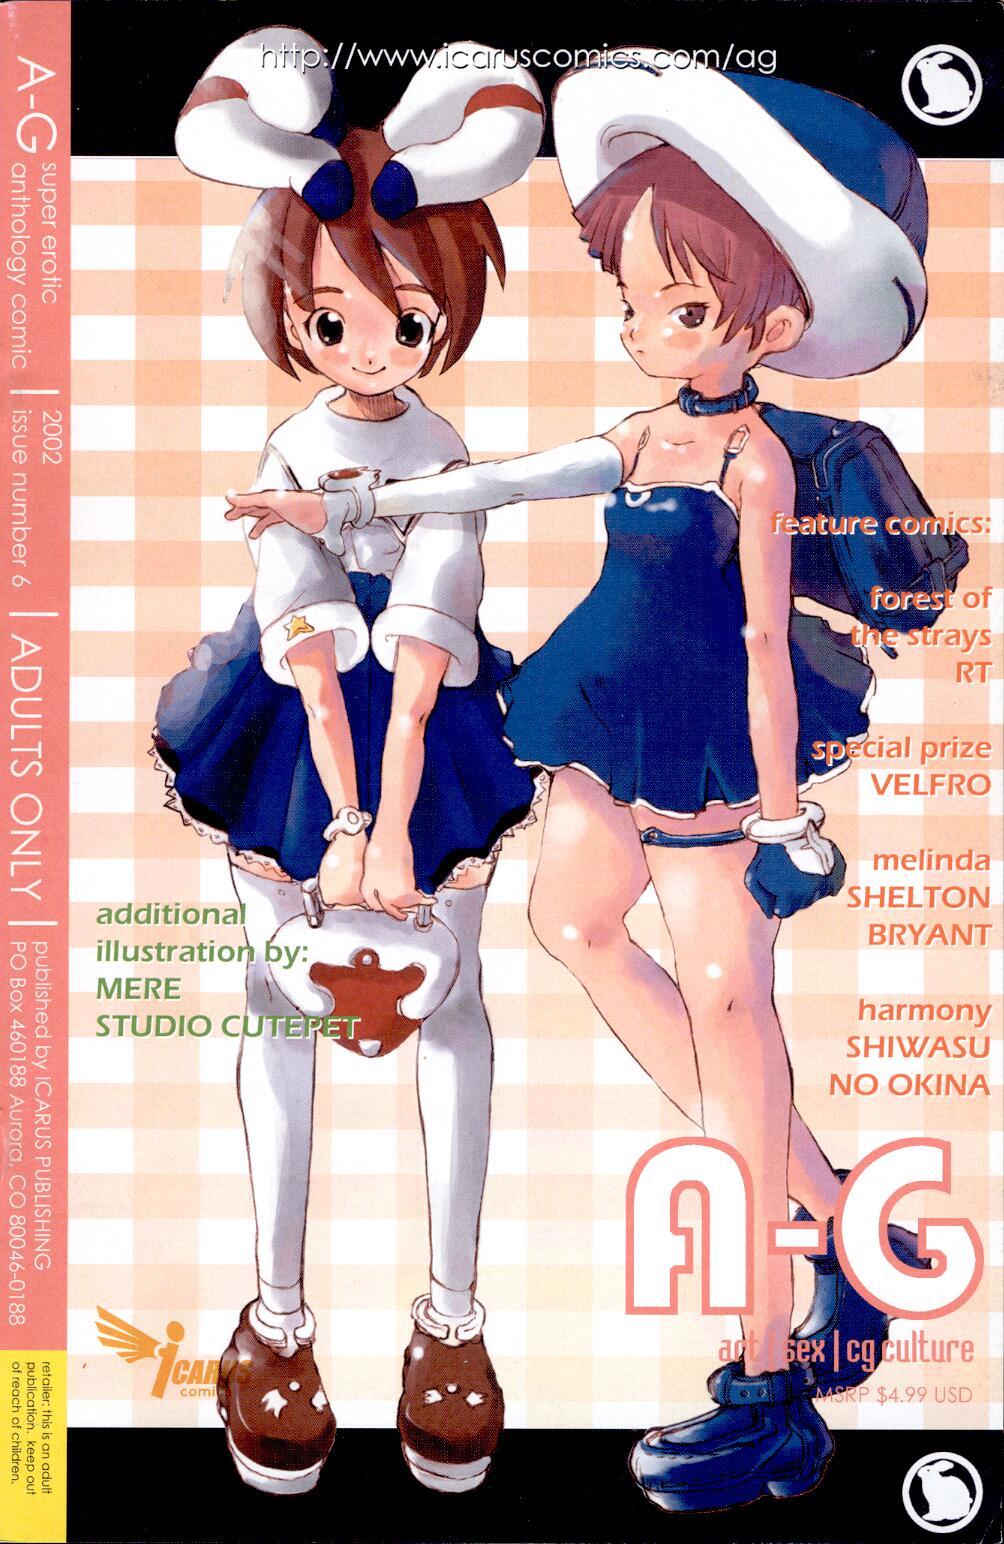 A-G Super Erotic 6 hentai manga